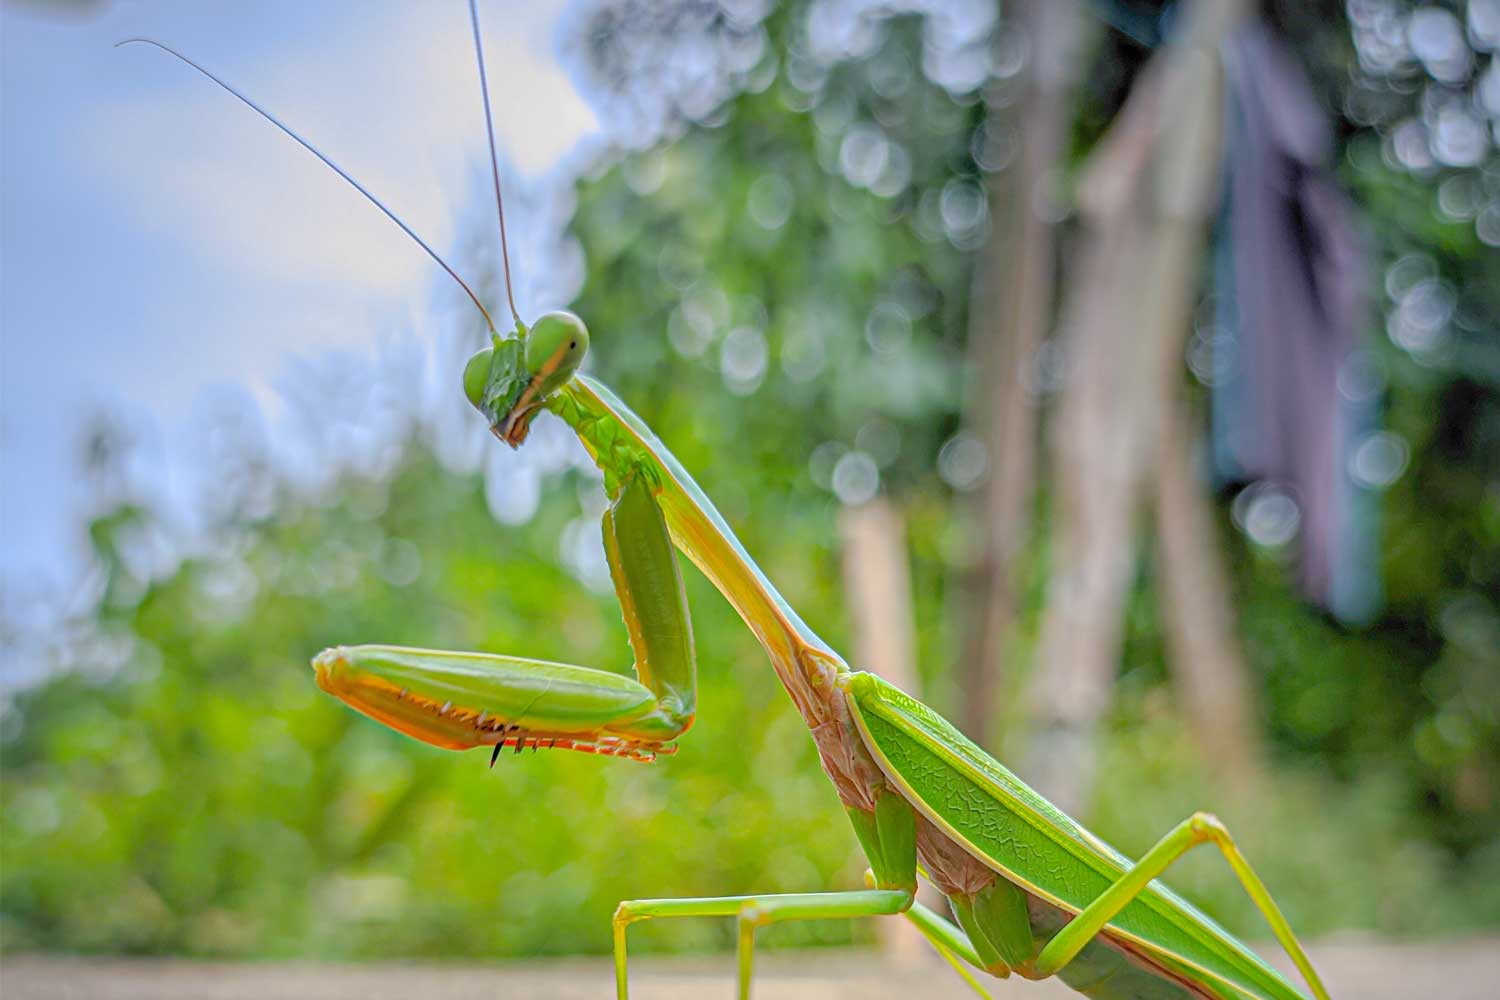 Close up of a praying mantis.